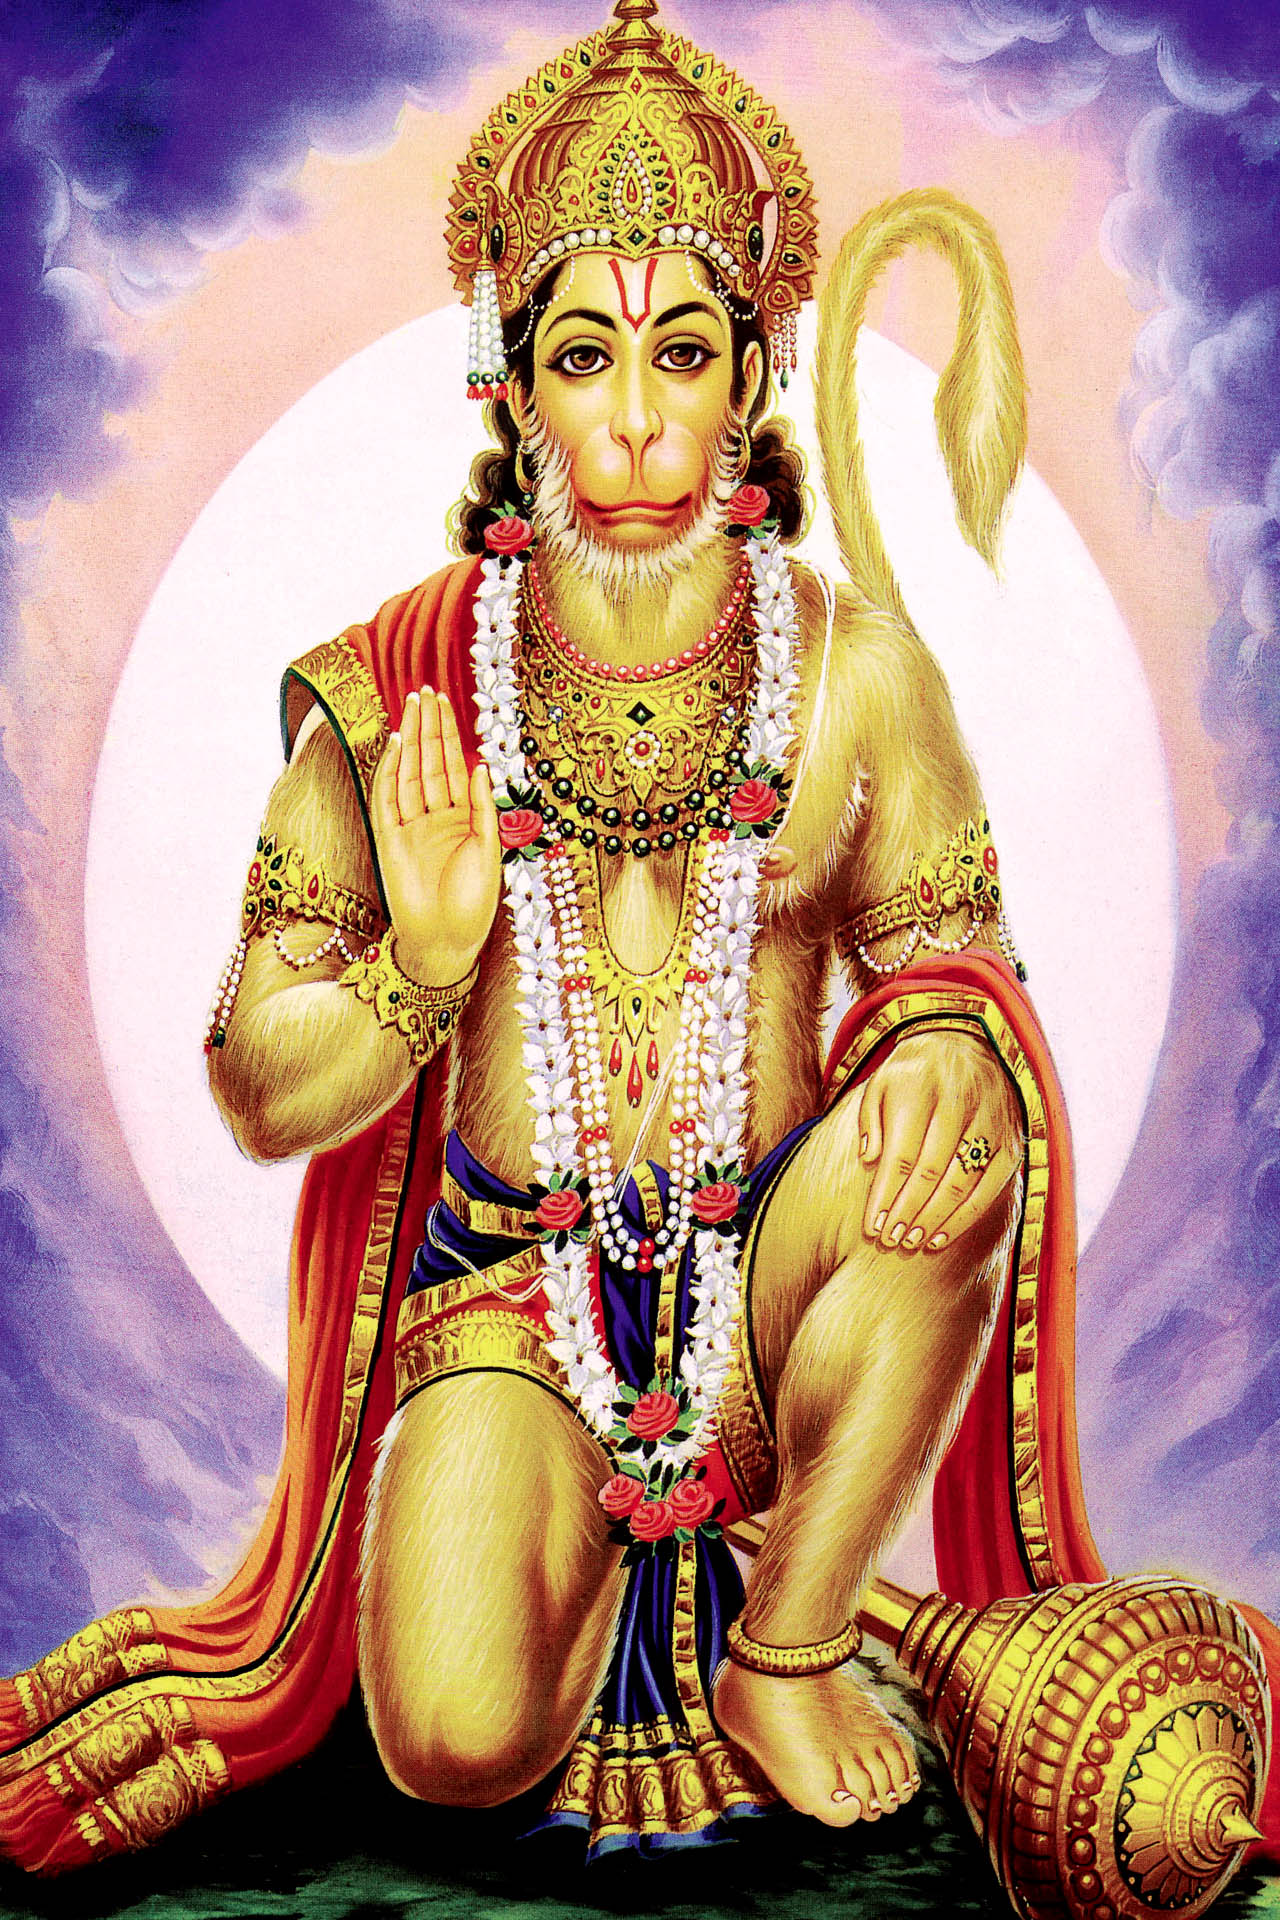 God Hanuman Ji Wallpaper For Mobile Full Hd Imagess